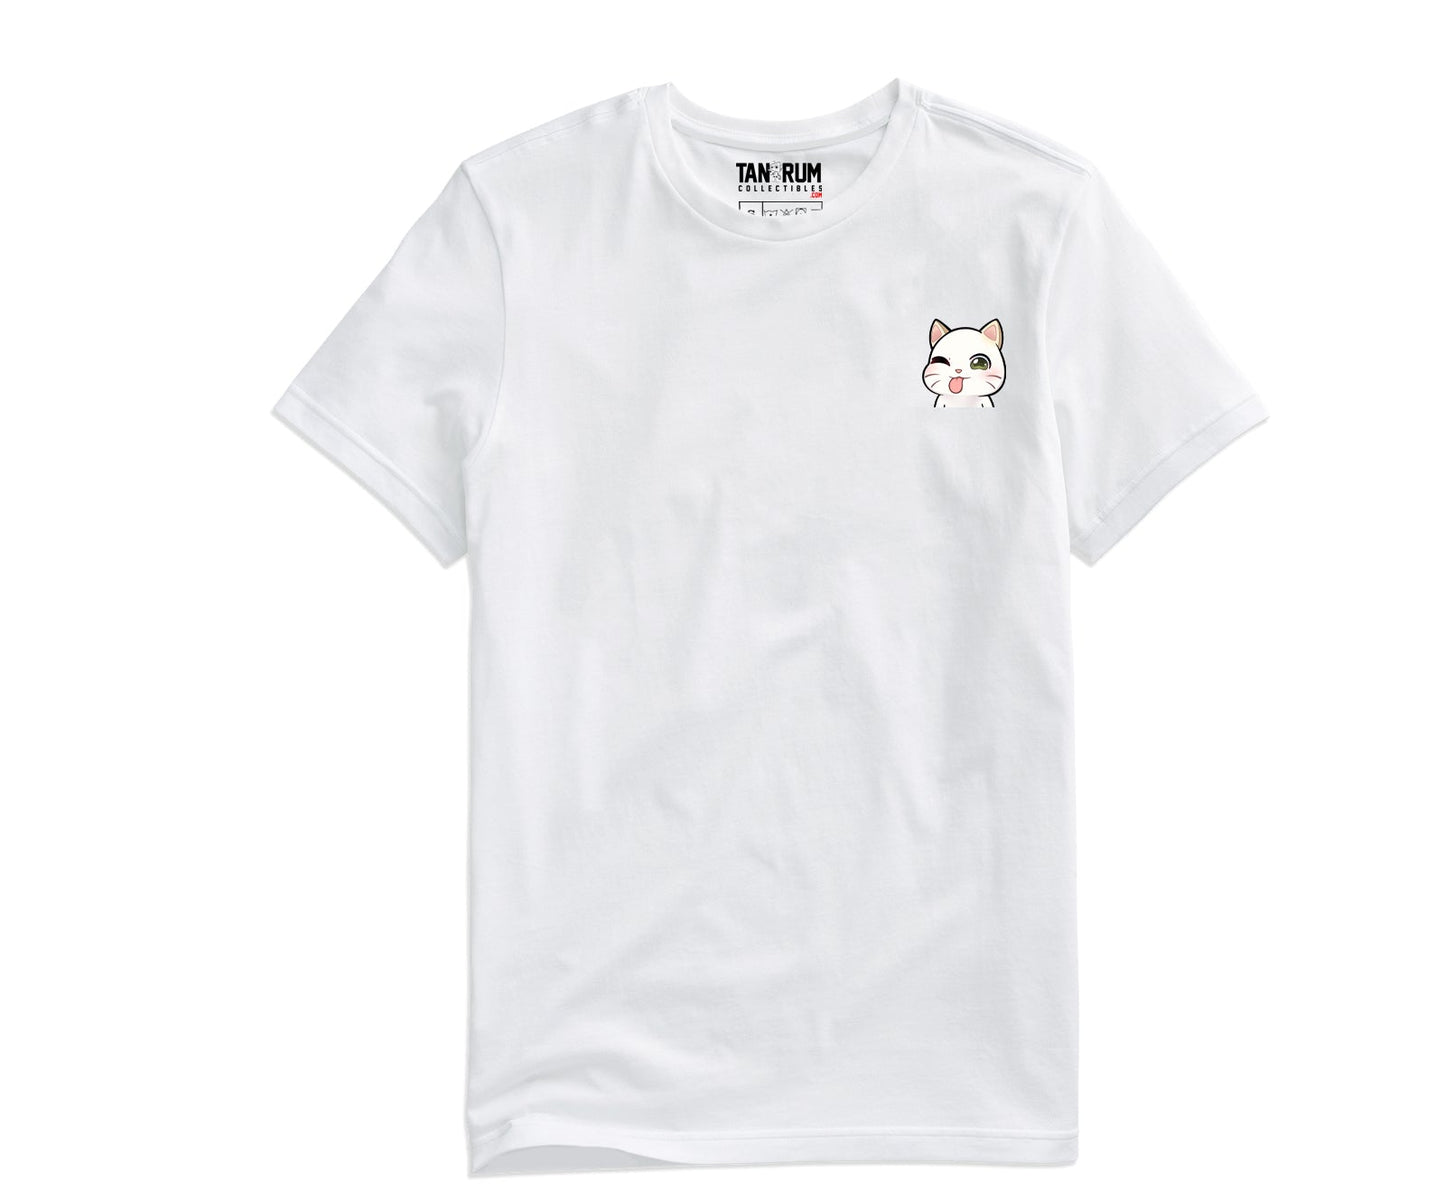 DanG88 -  Printed Pocket Shirt (Series 1) - Sassy (Streamer Purchase)